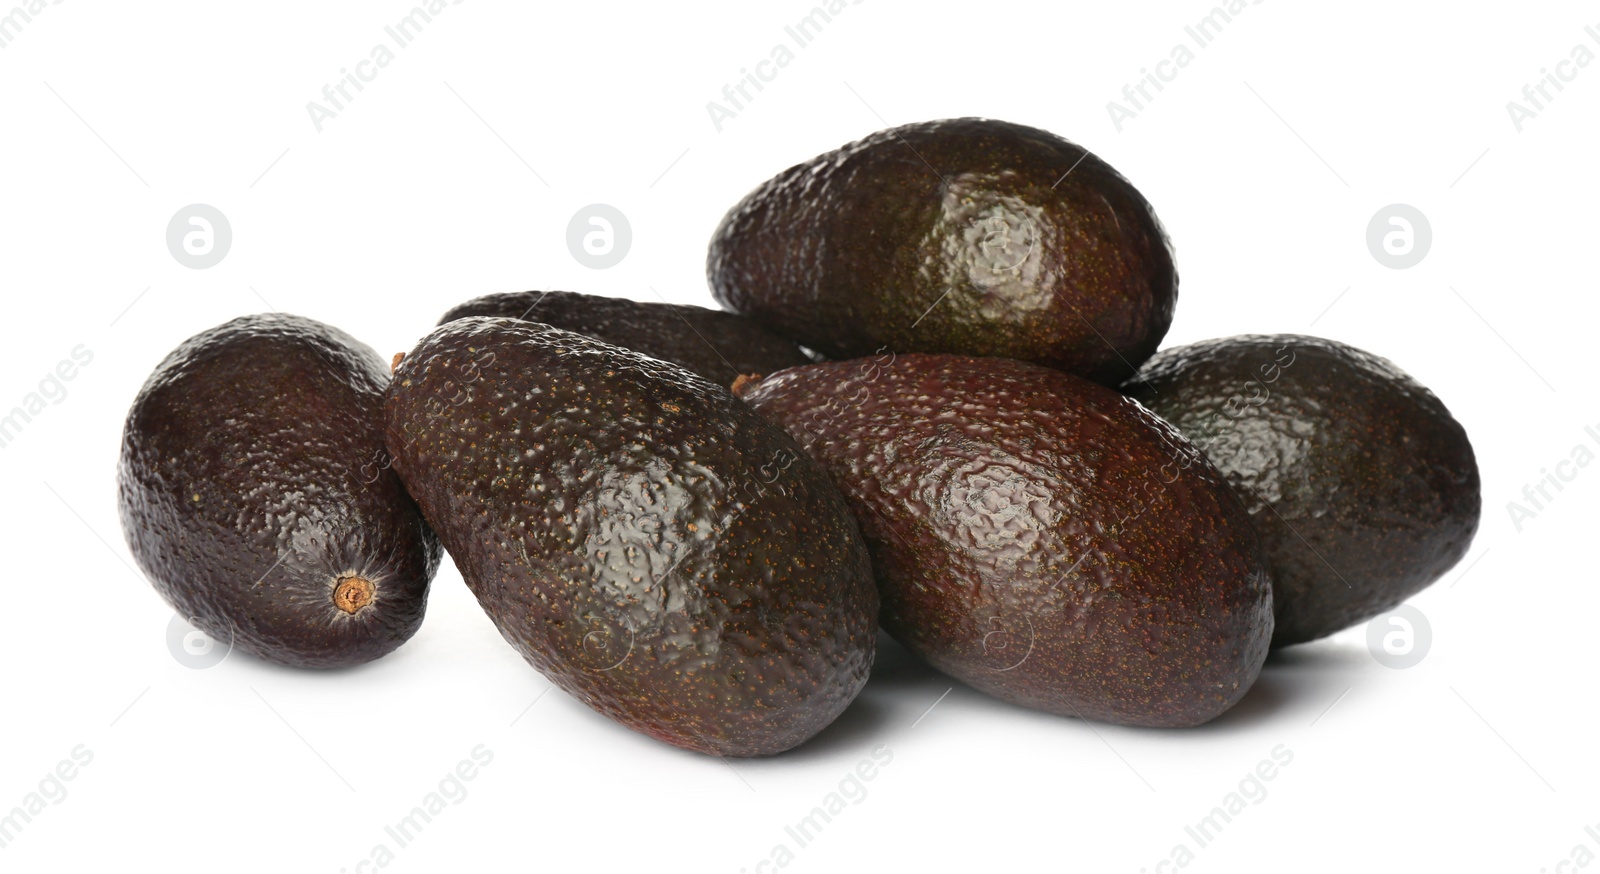 Photo of Whole fresh ripe avocadoes on white background